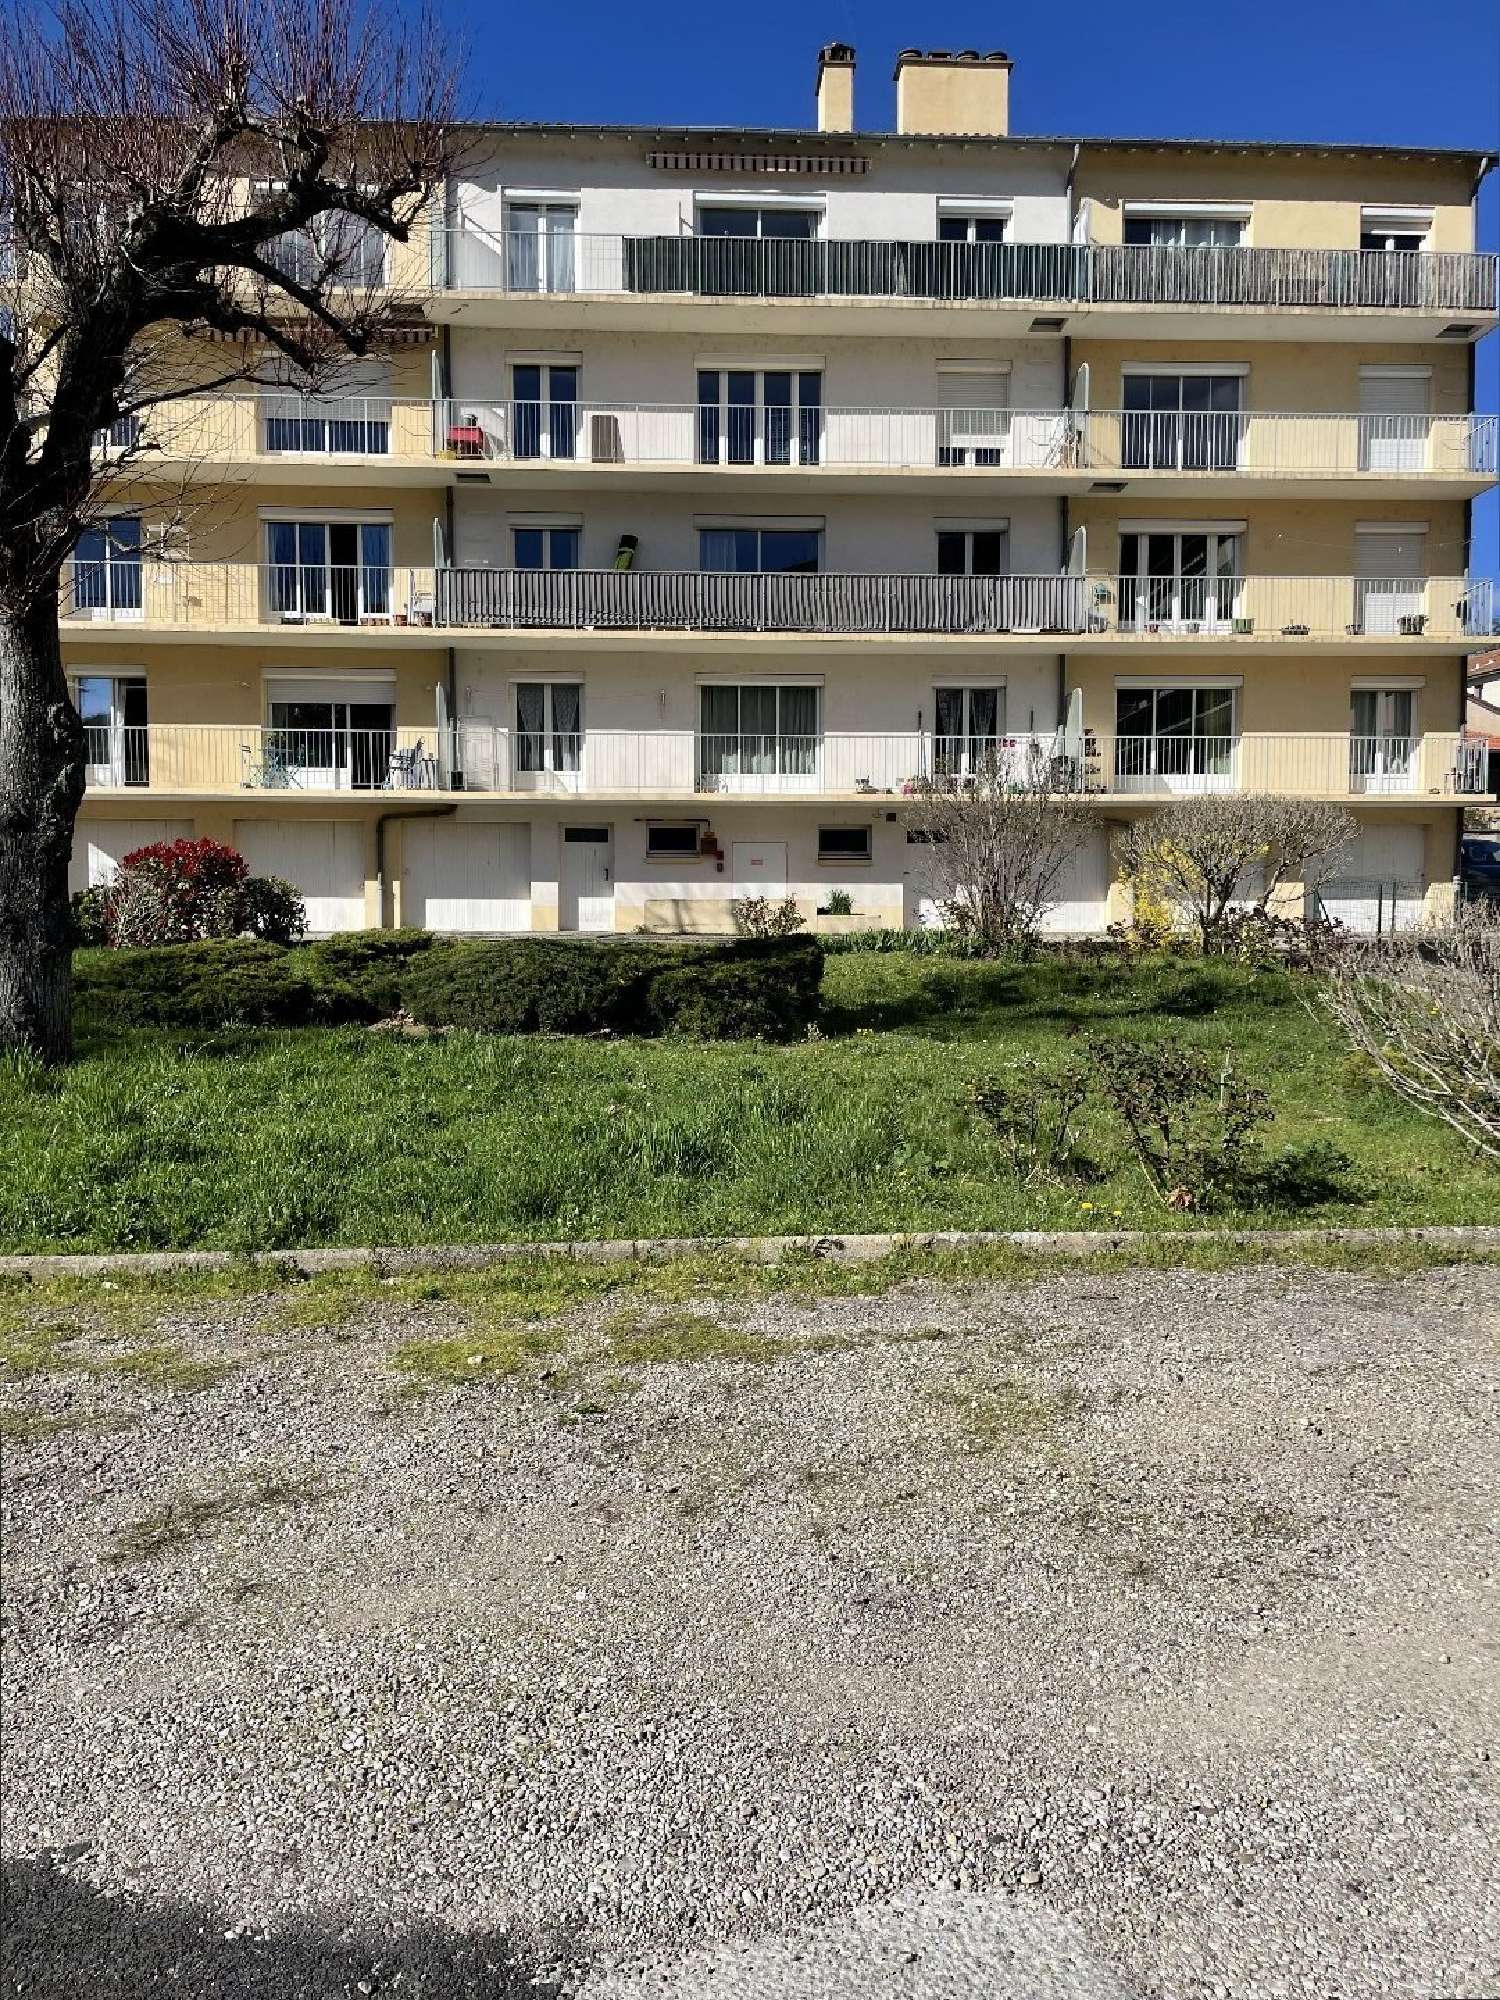  à vendre appartement Millau Aveyron 1